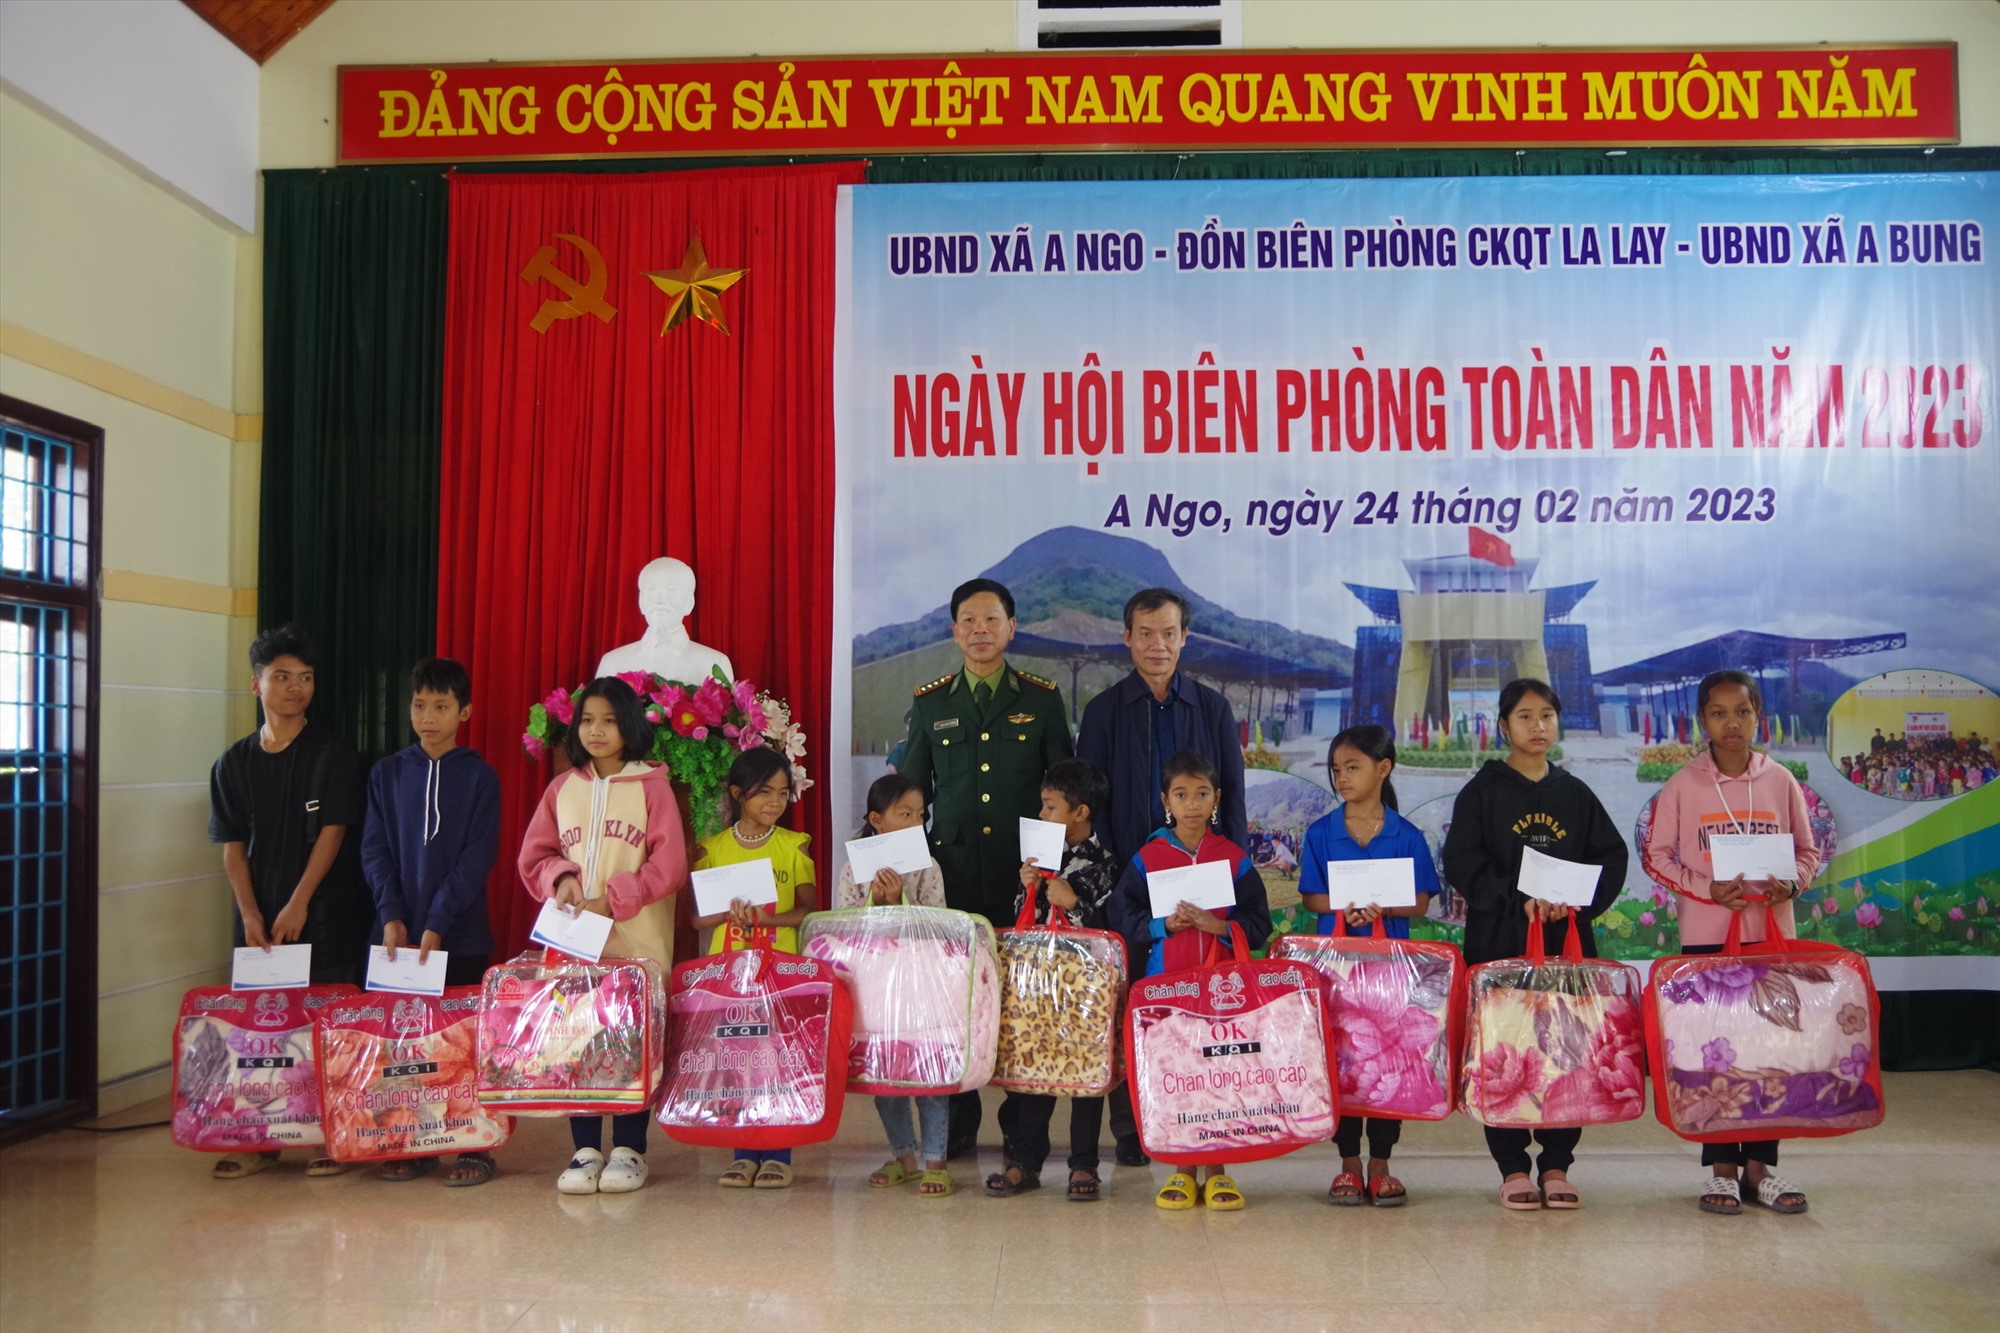 Đại tá Ngô Xuân Thường, Phó Chính ủy BĐBP tỉnh và lãnh đạo địa phương xã: A Ngo, ABung trao quà cho các em học sinh trong chương trình “Nâng bước em tới trường”